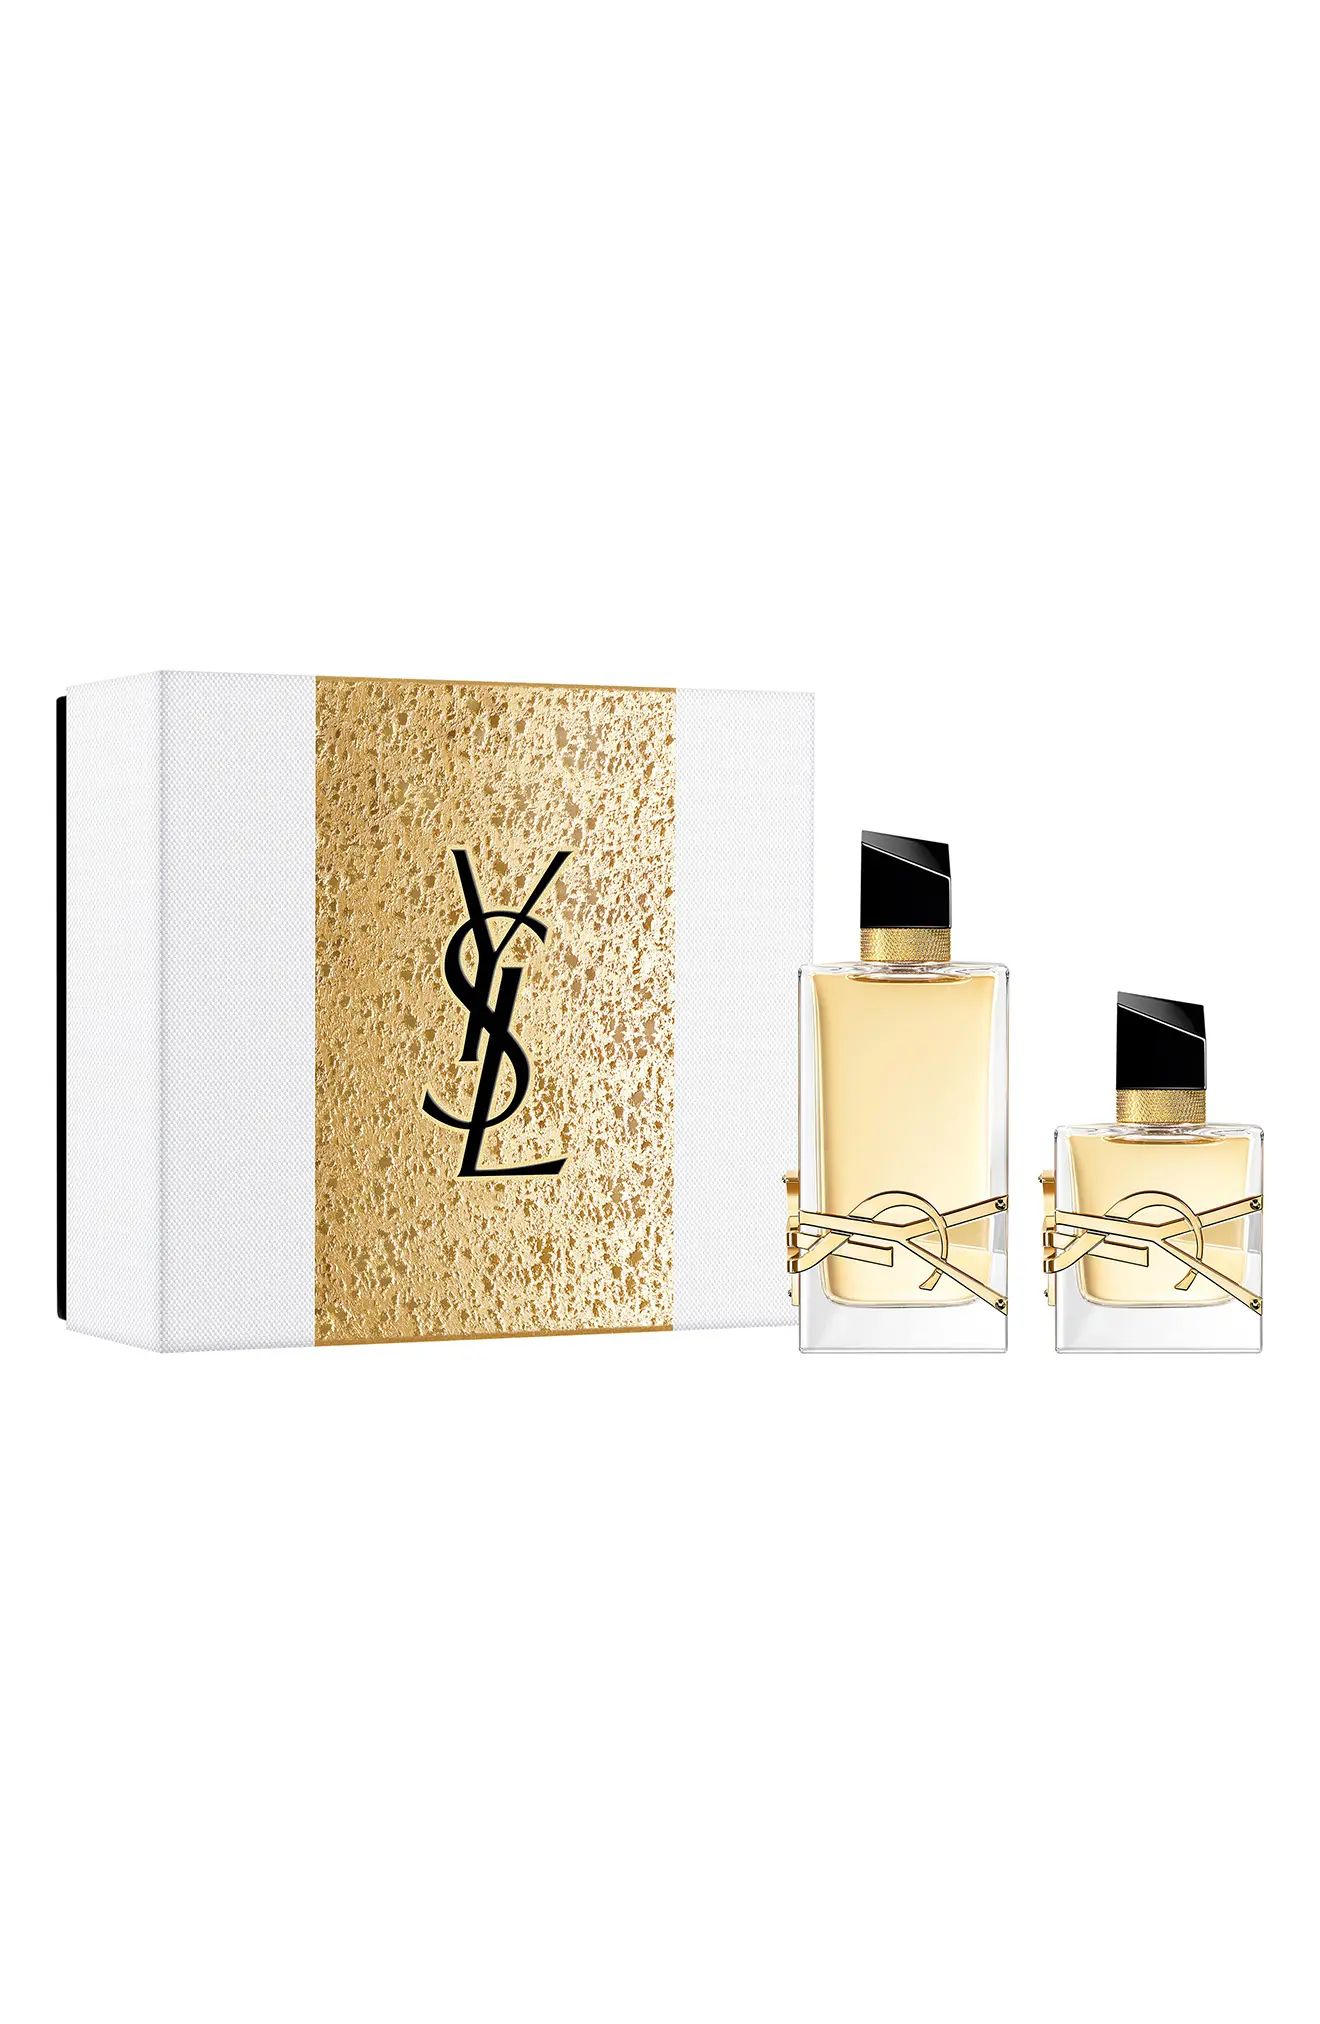 Yves Saint Laurent Libre Eau de Parfum Set USD $212 Value at Nordstrom | Nordstrom